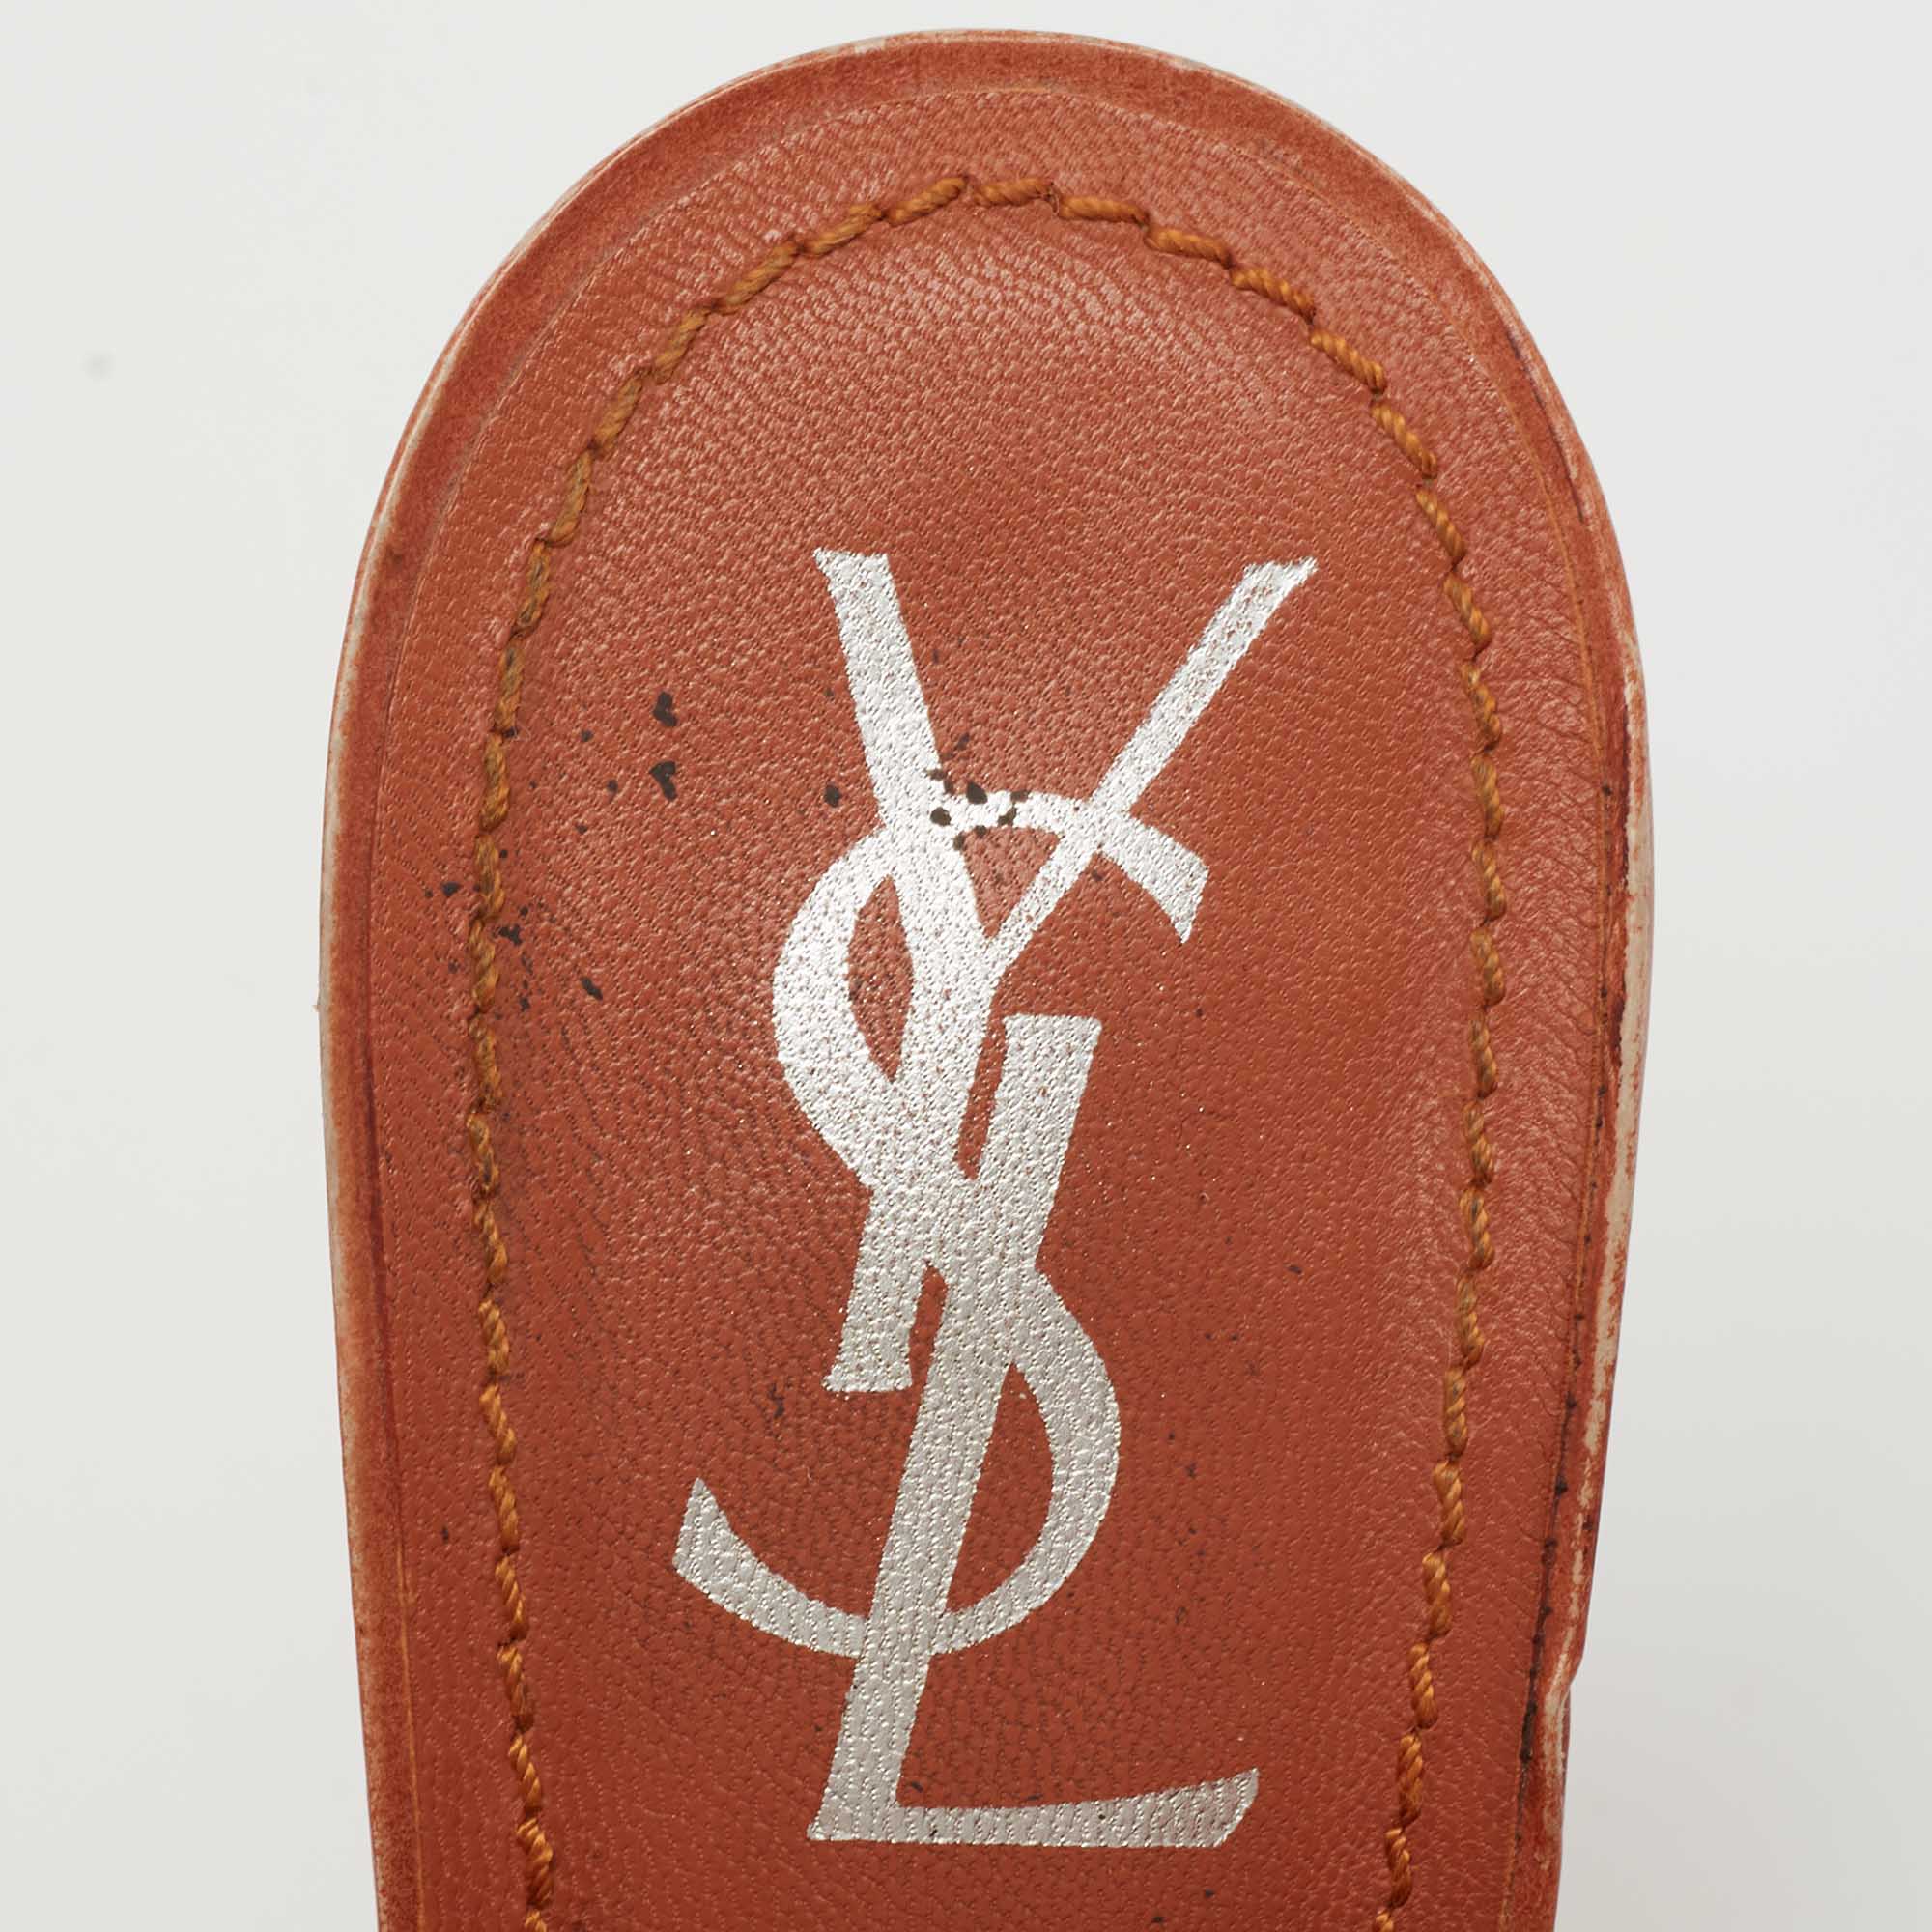 Yves Saint Laurent Orange Eel Leather Slingback Platform Sandals Size 37